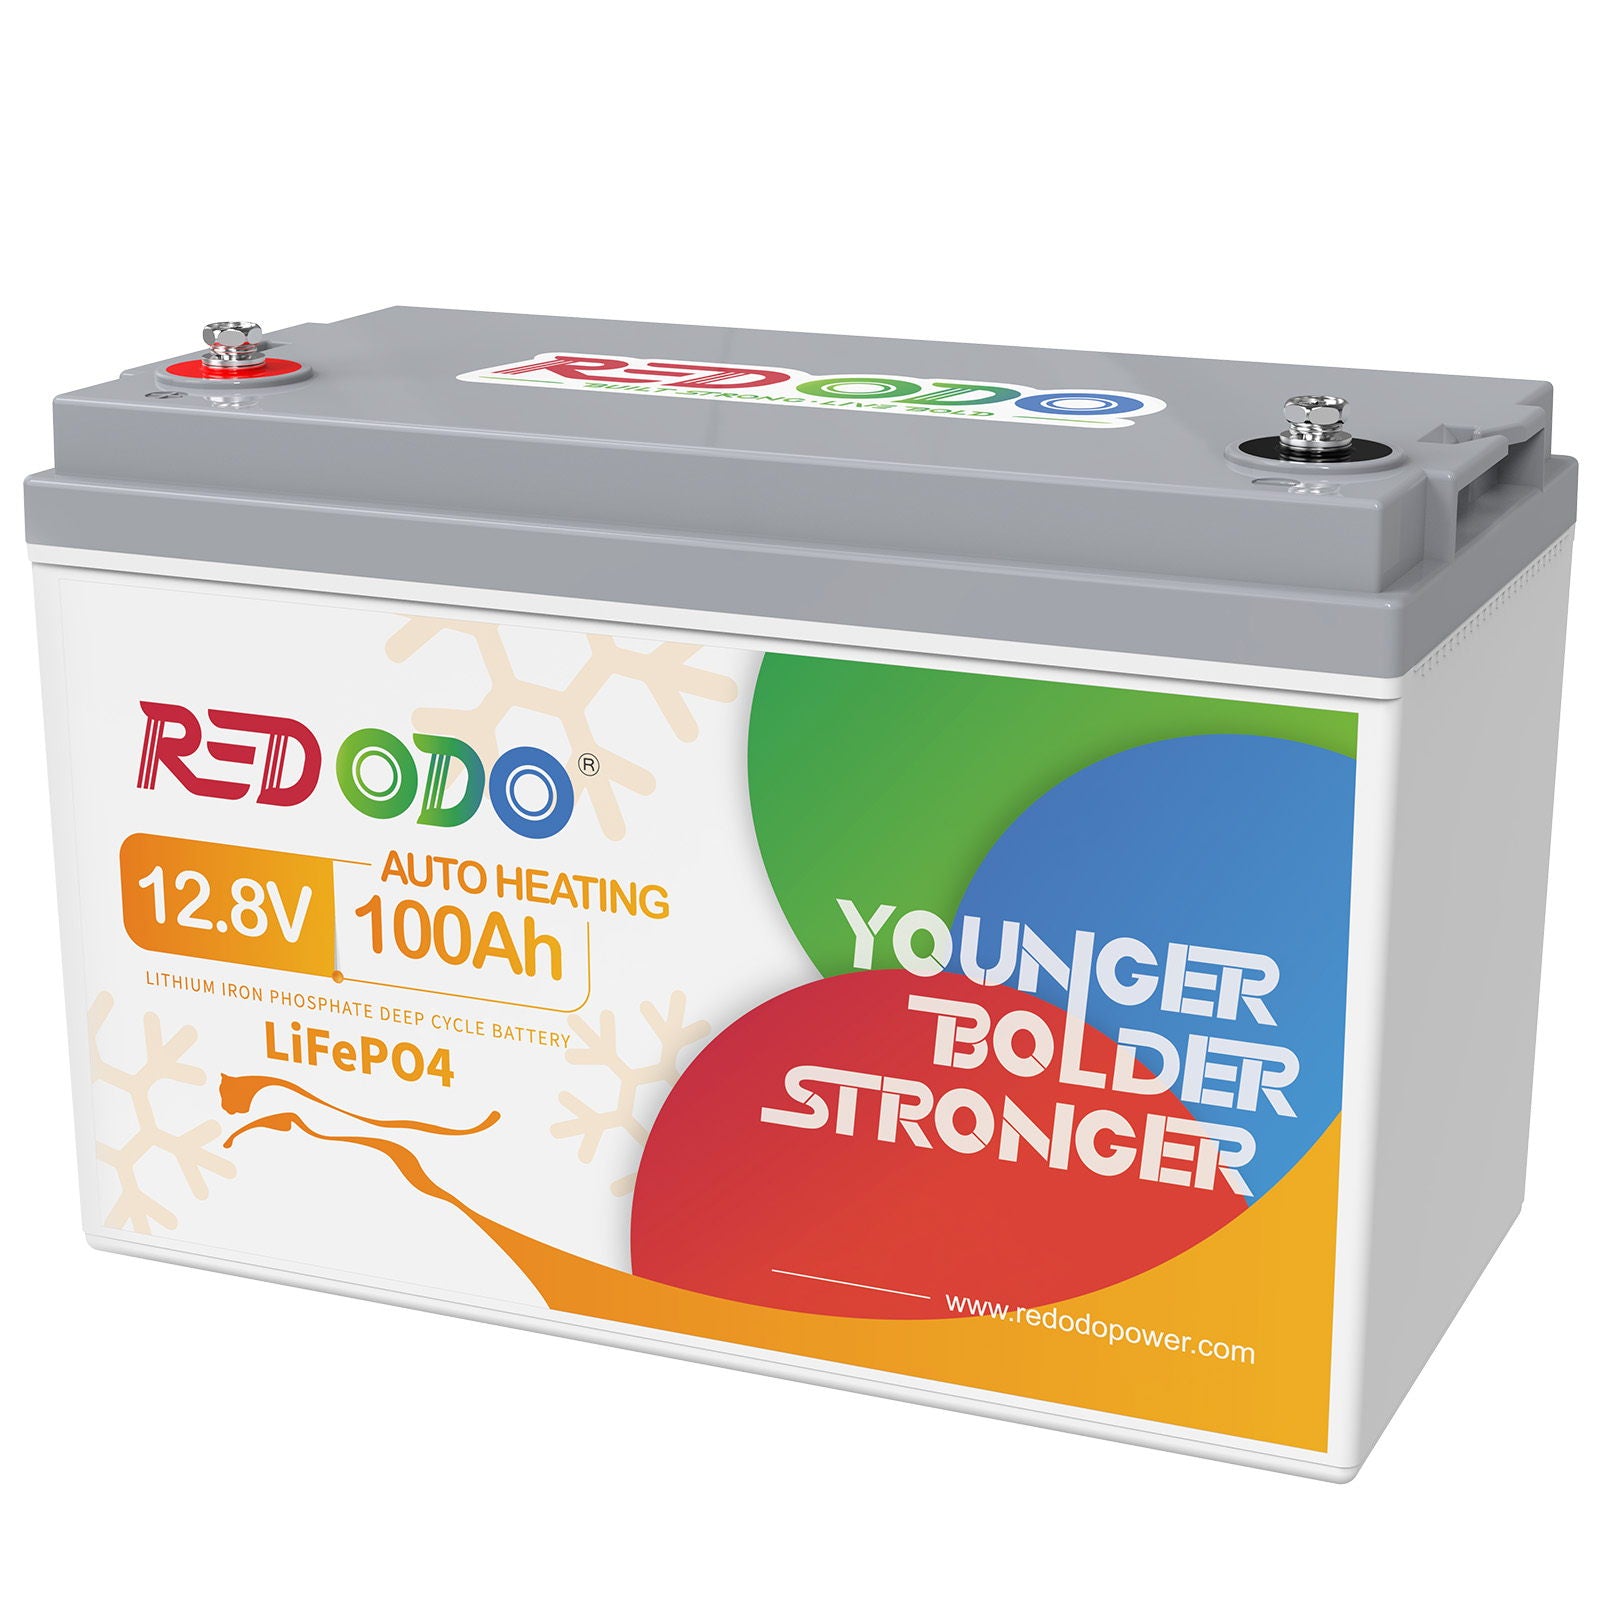 Befreiung von 19% MwSt - Redodo 12V 100Ah LiFePO4 Batterie mit Selbsterwärmung - nur für Wohngebäude und Deutschland